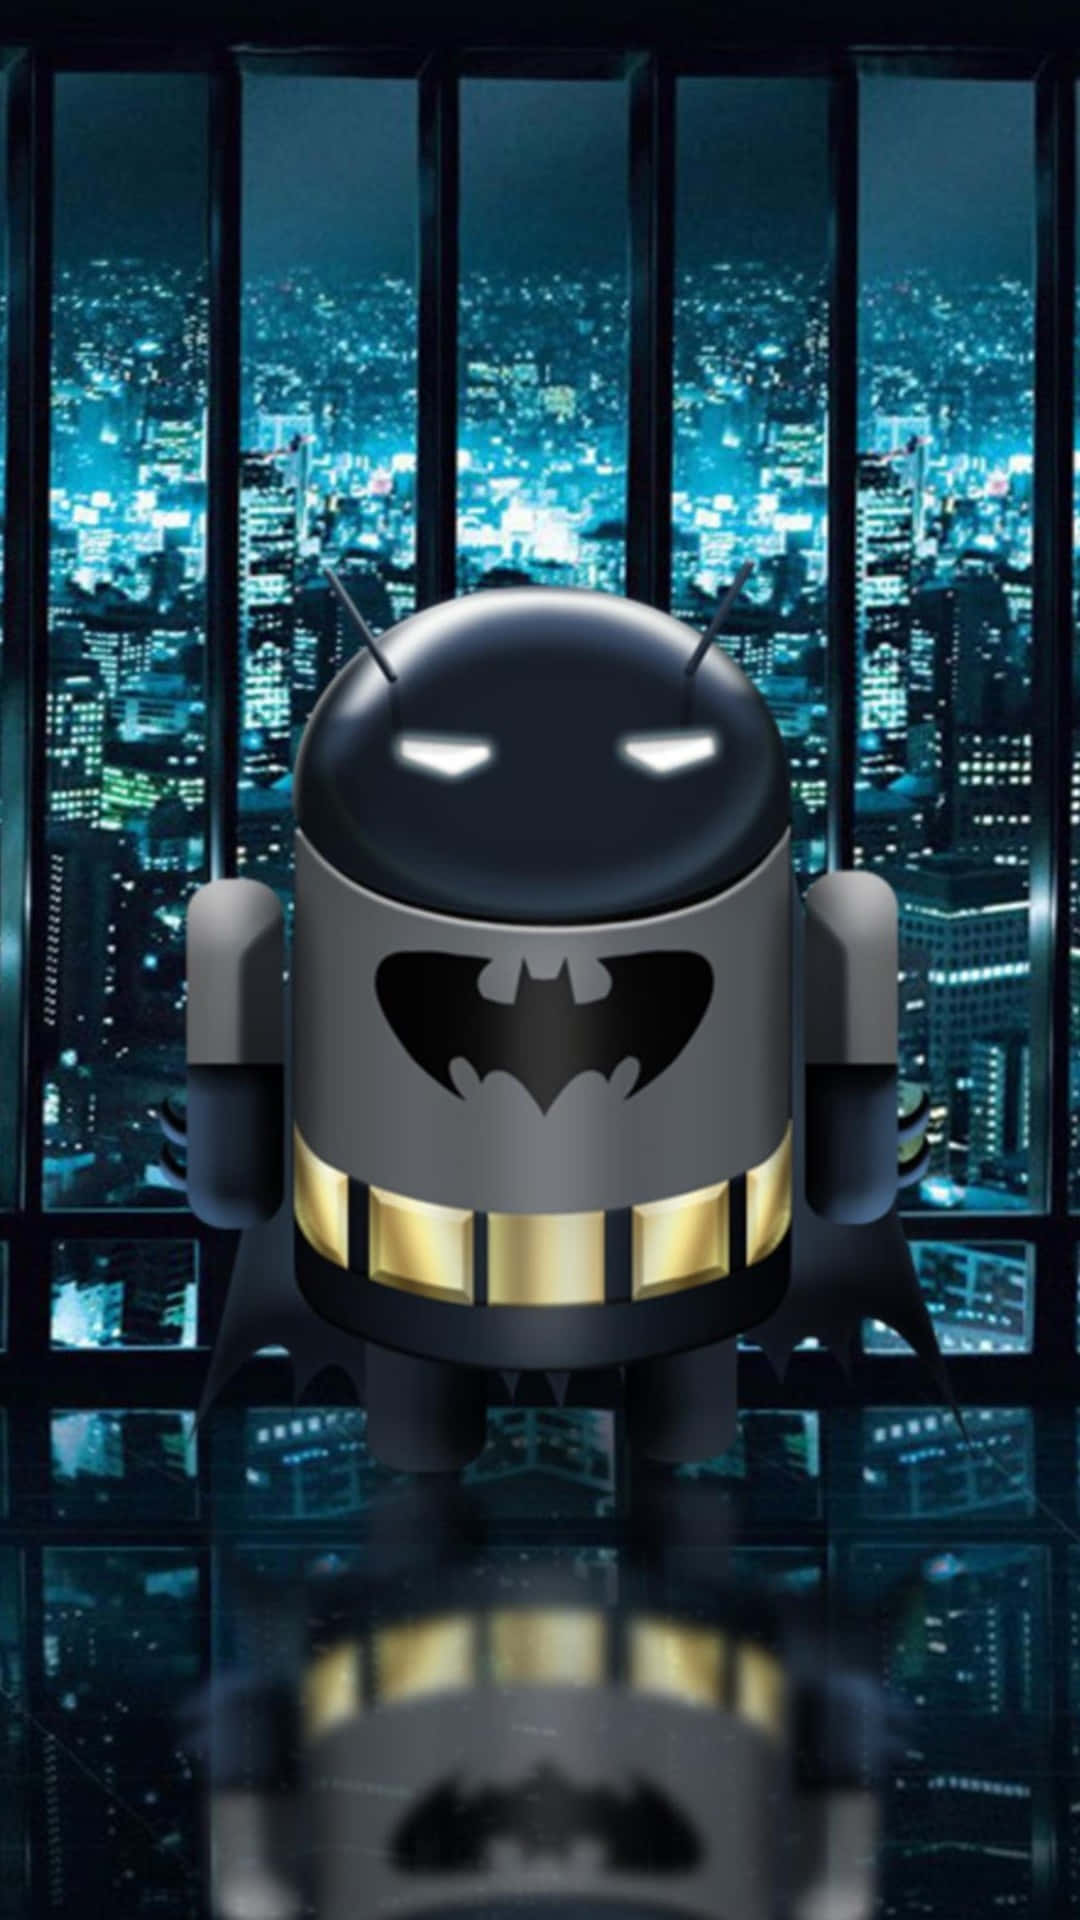 High Tech Batman, Ready for Action Wallpaper